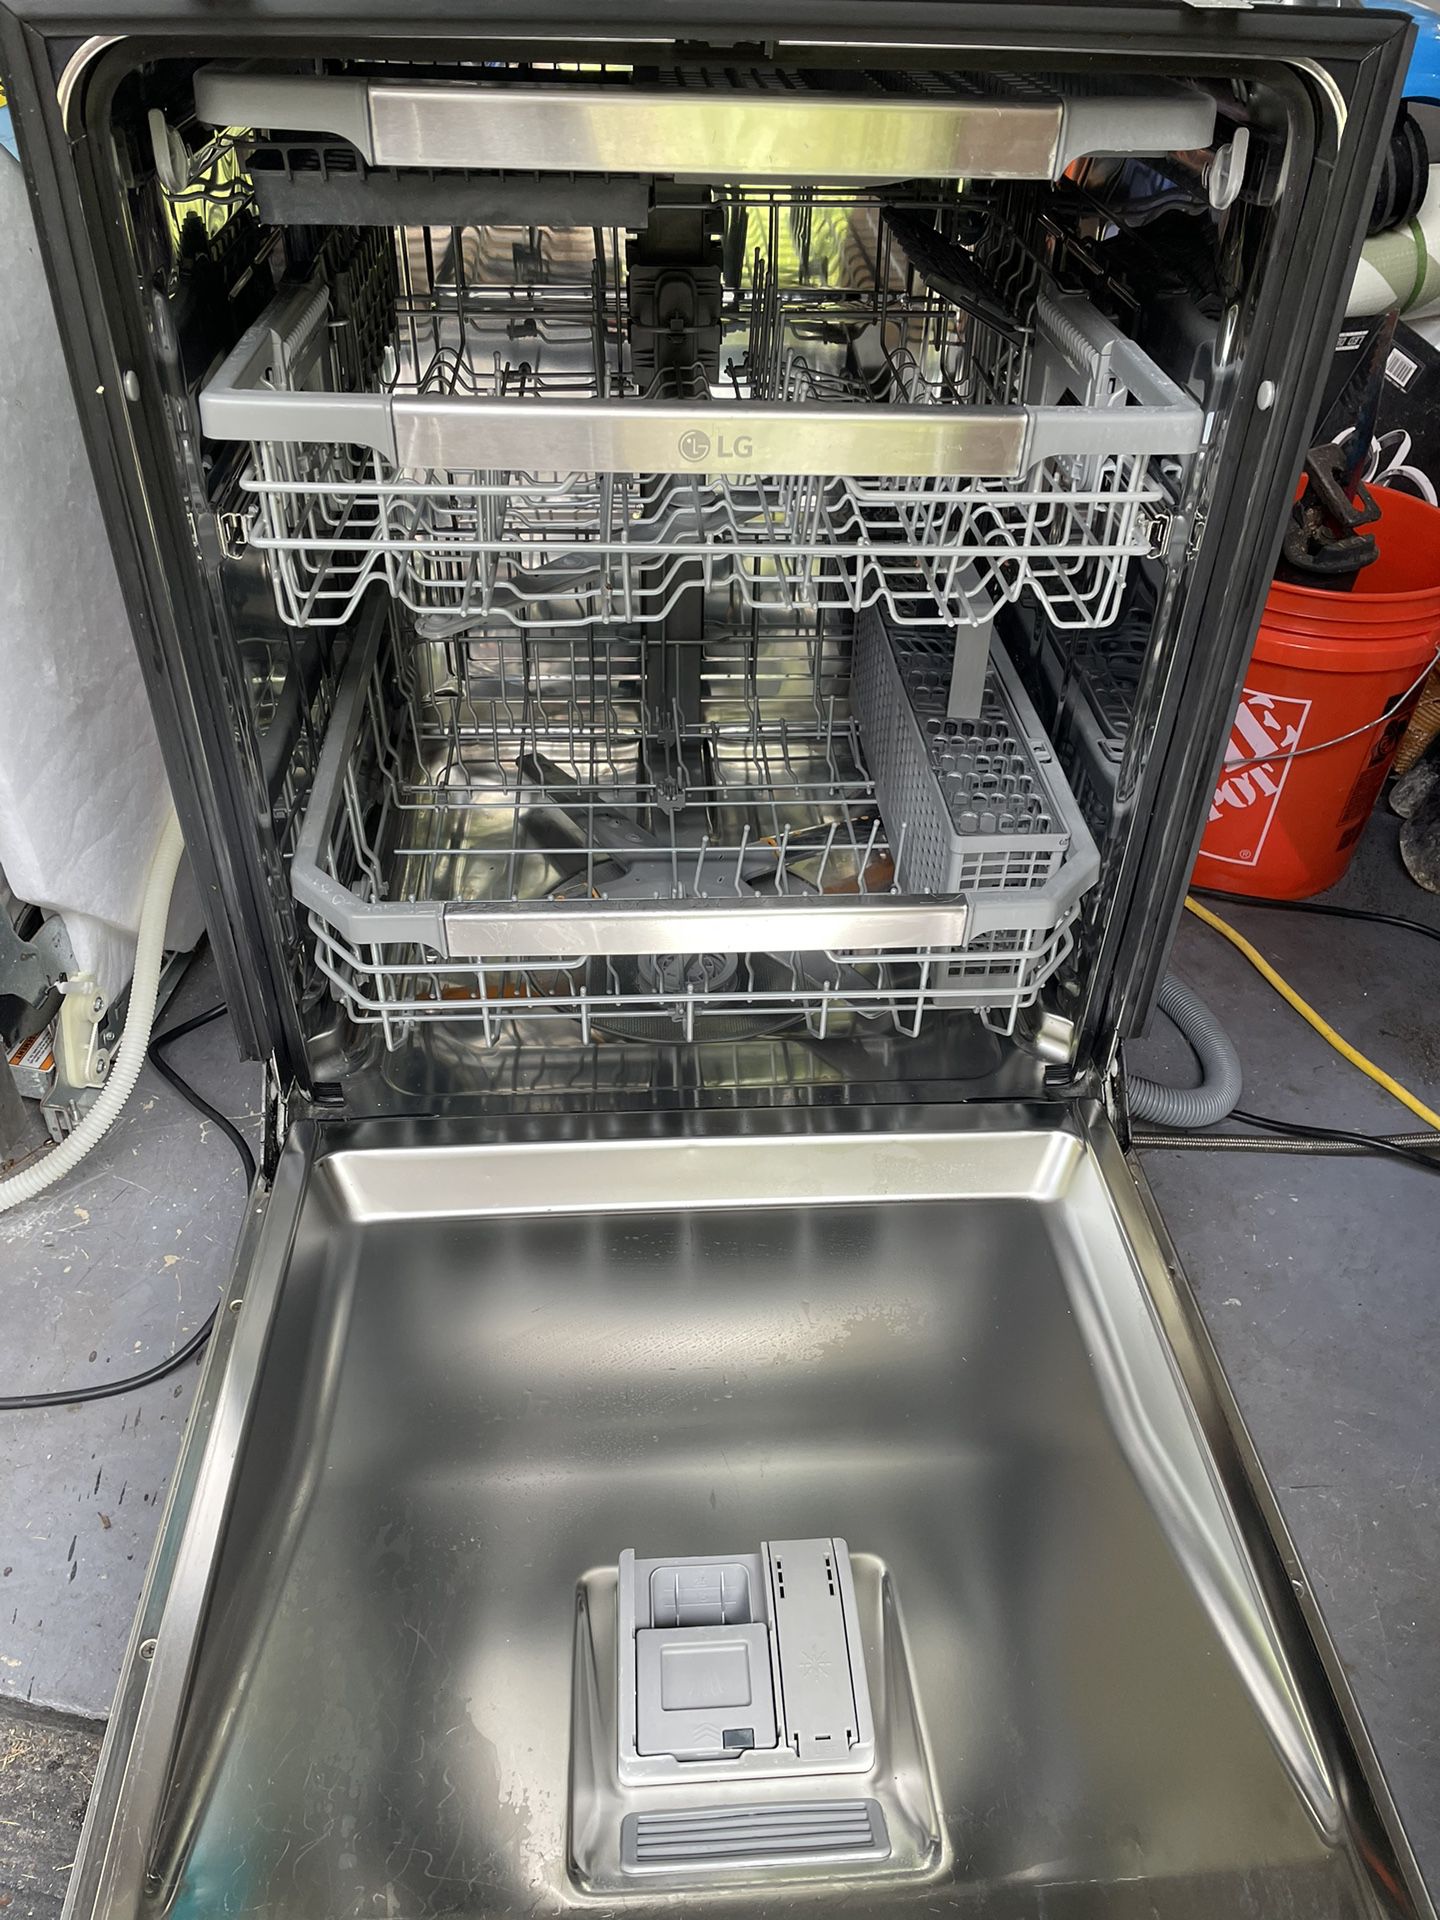 LG Thin Q Dishwasher